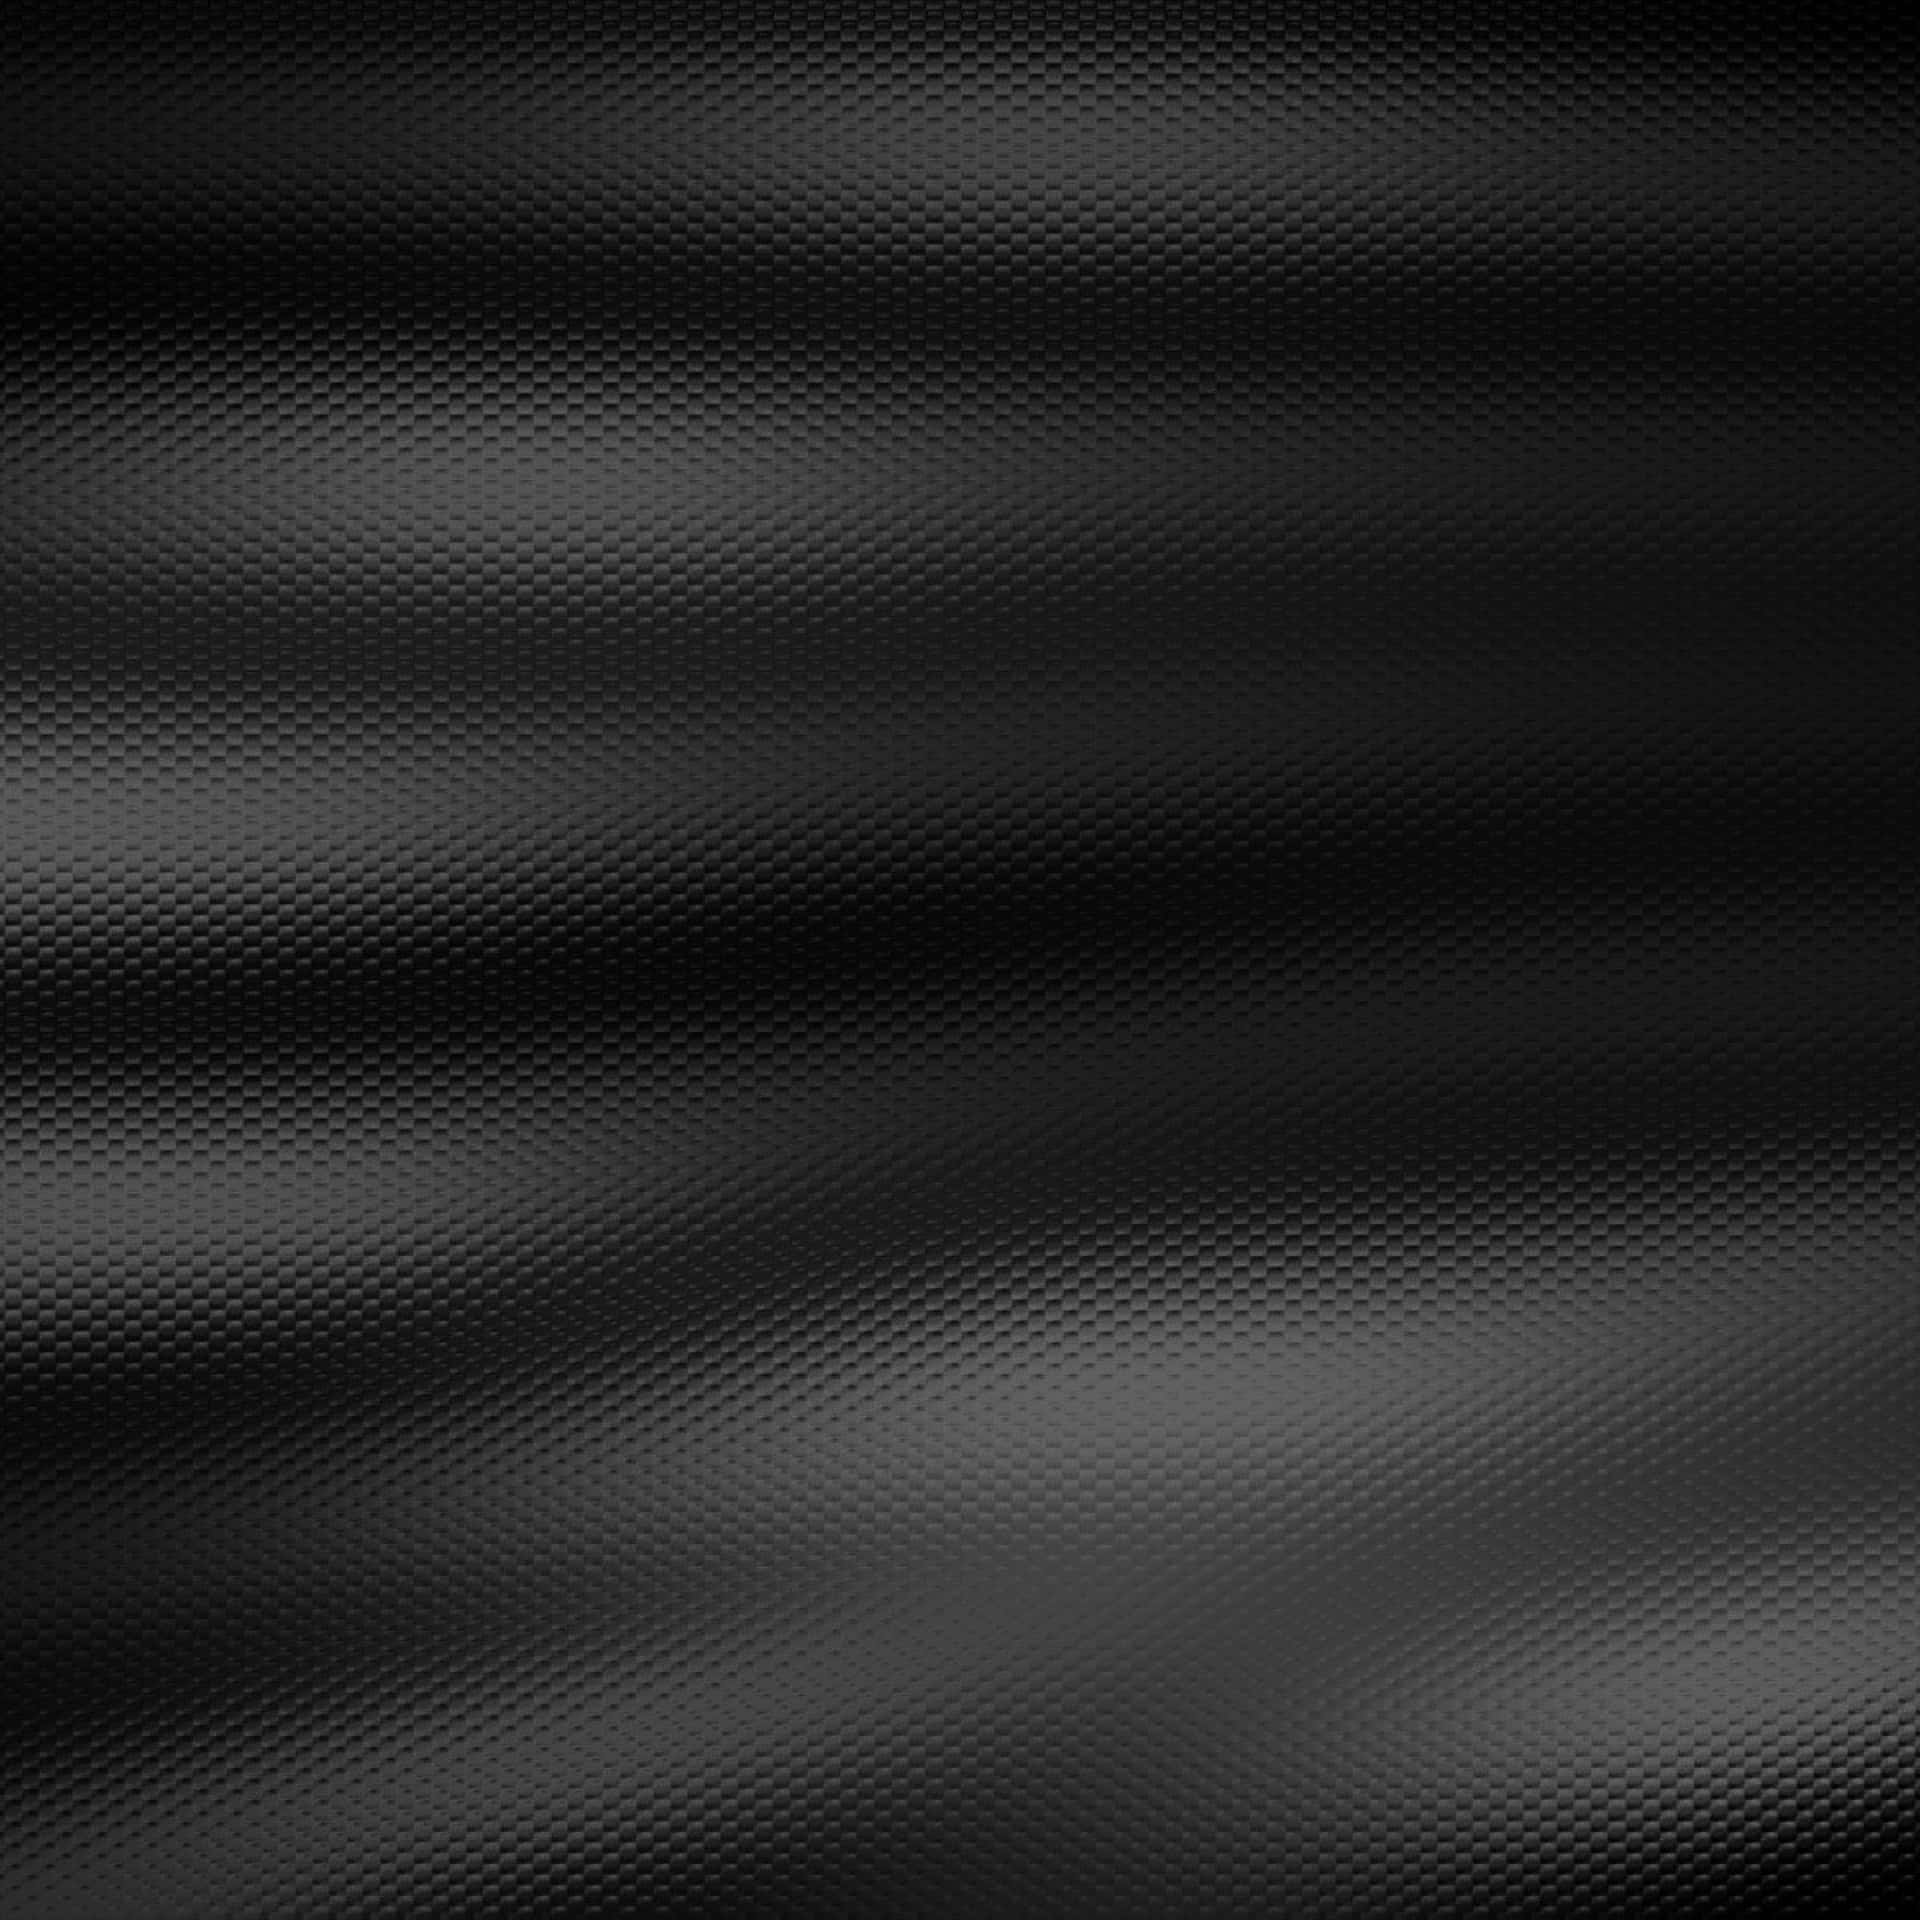 Backgroundlägg Till En Modern Men Sofistikerad Touch Till Utrymmet Med Denna Stiliga Mörka Ipad-bakgrundsbild. Wallpaper